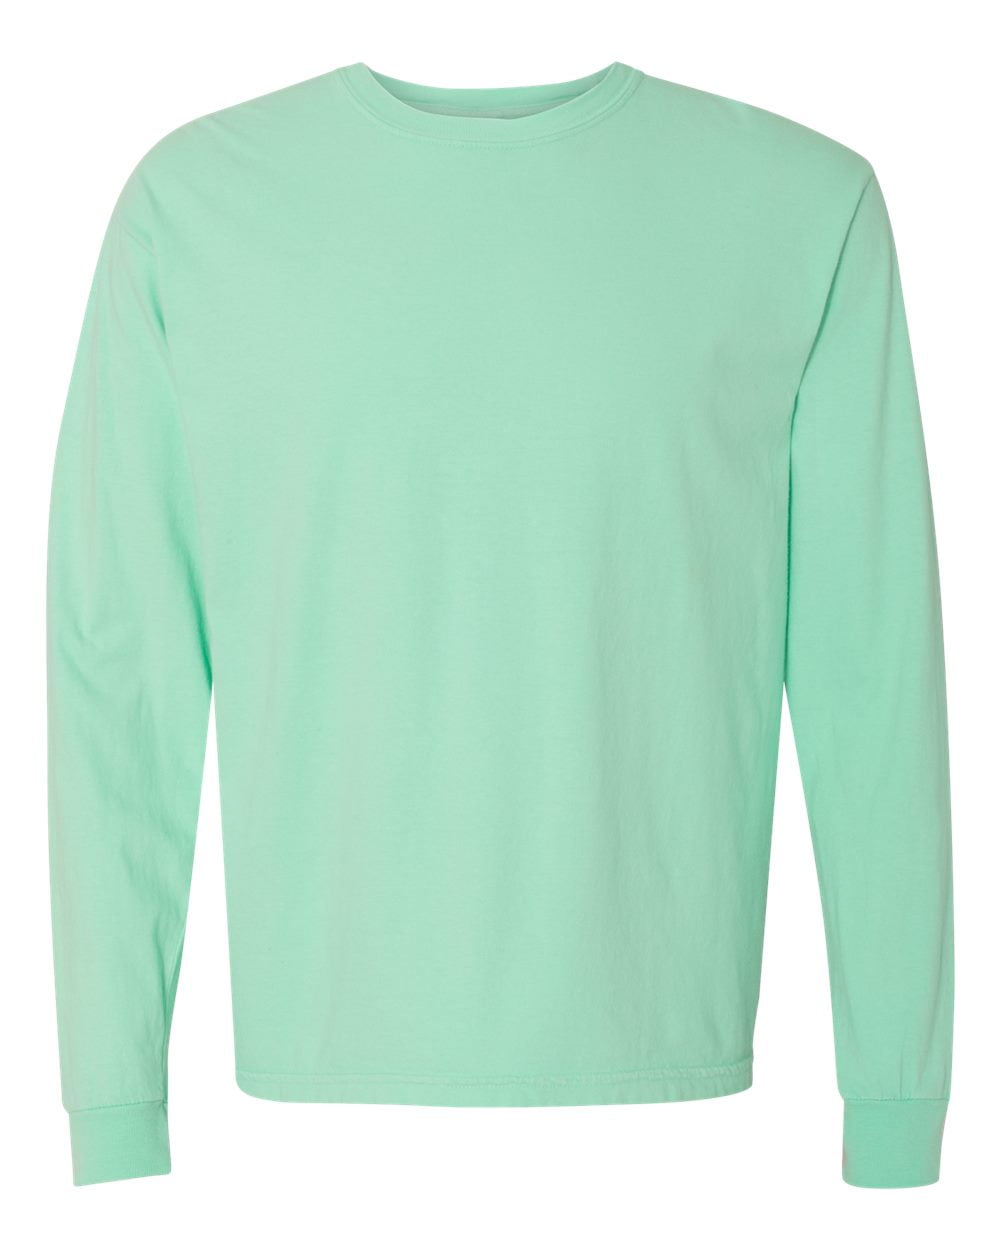 Comfort Colors Garment-Dyed Heavyweight Long Sleeve T-Shirt - Walmart.com